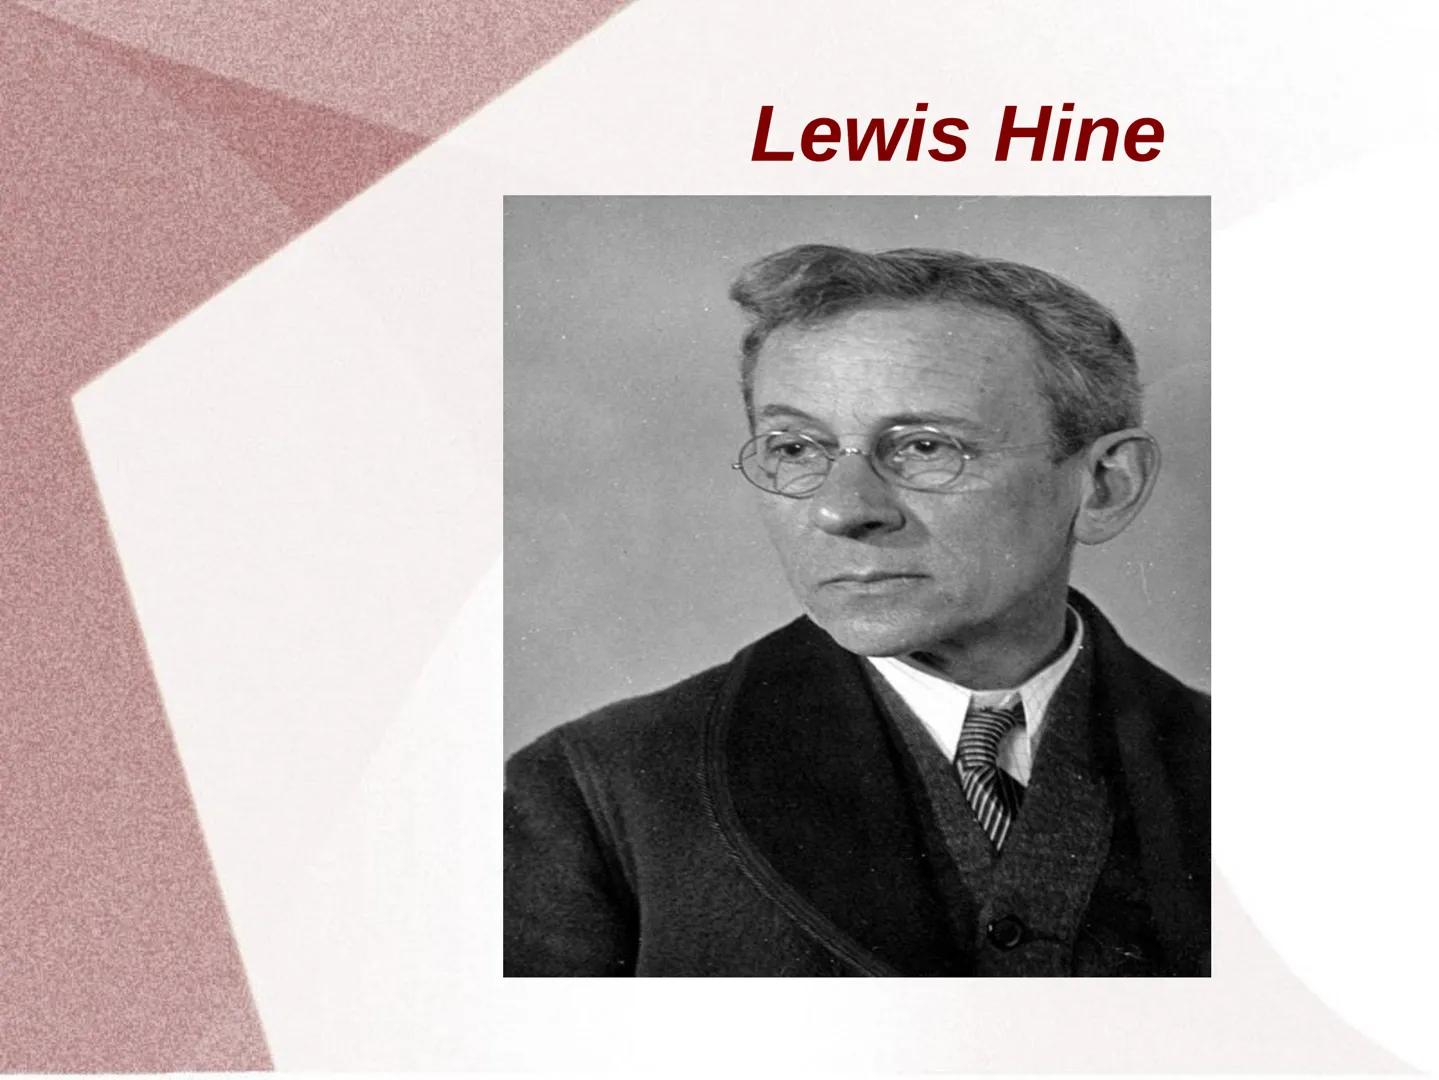 Lewis Hine Gliederung
1. Werdegang
2. künstlerische Position, Sichtweise und Haltung des
Künstlers
3. Ziele und Konzepte
4. Arbeit (Kamera, 